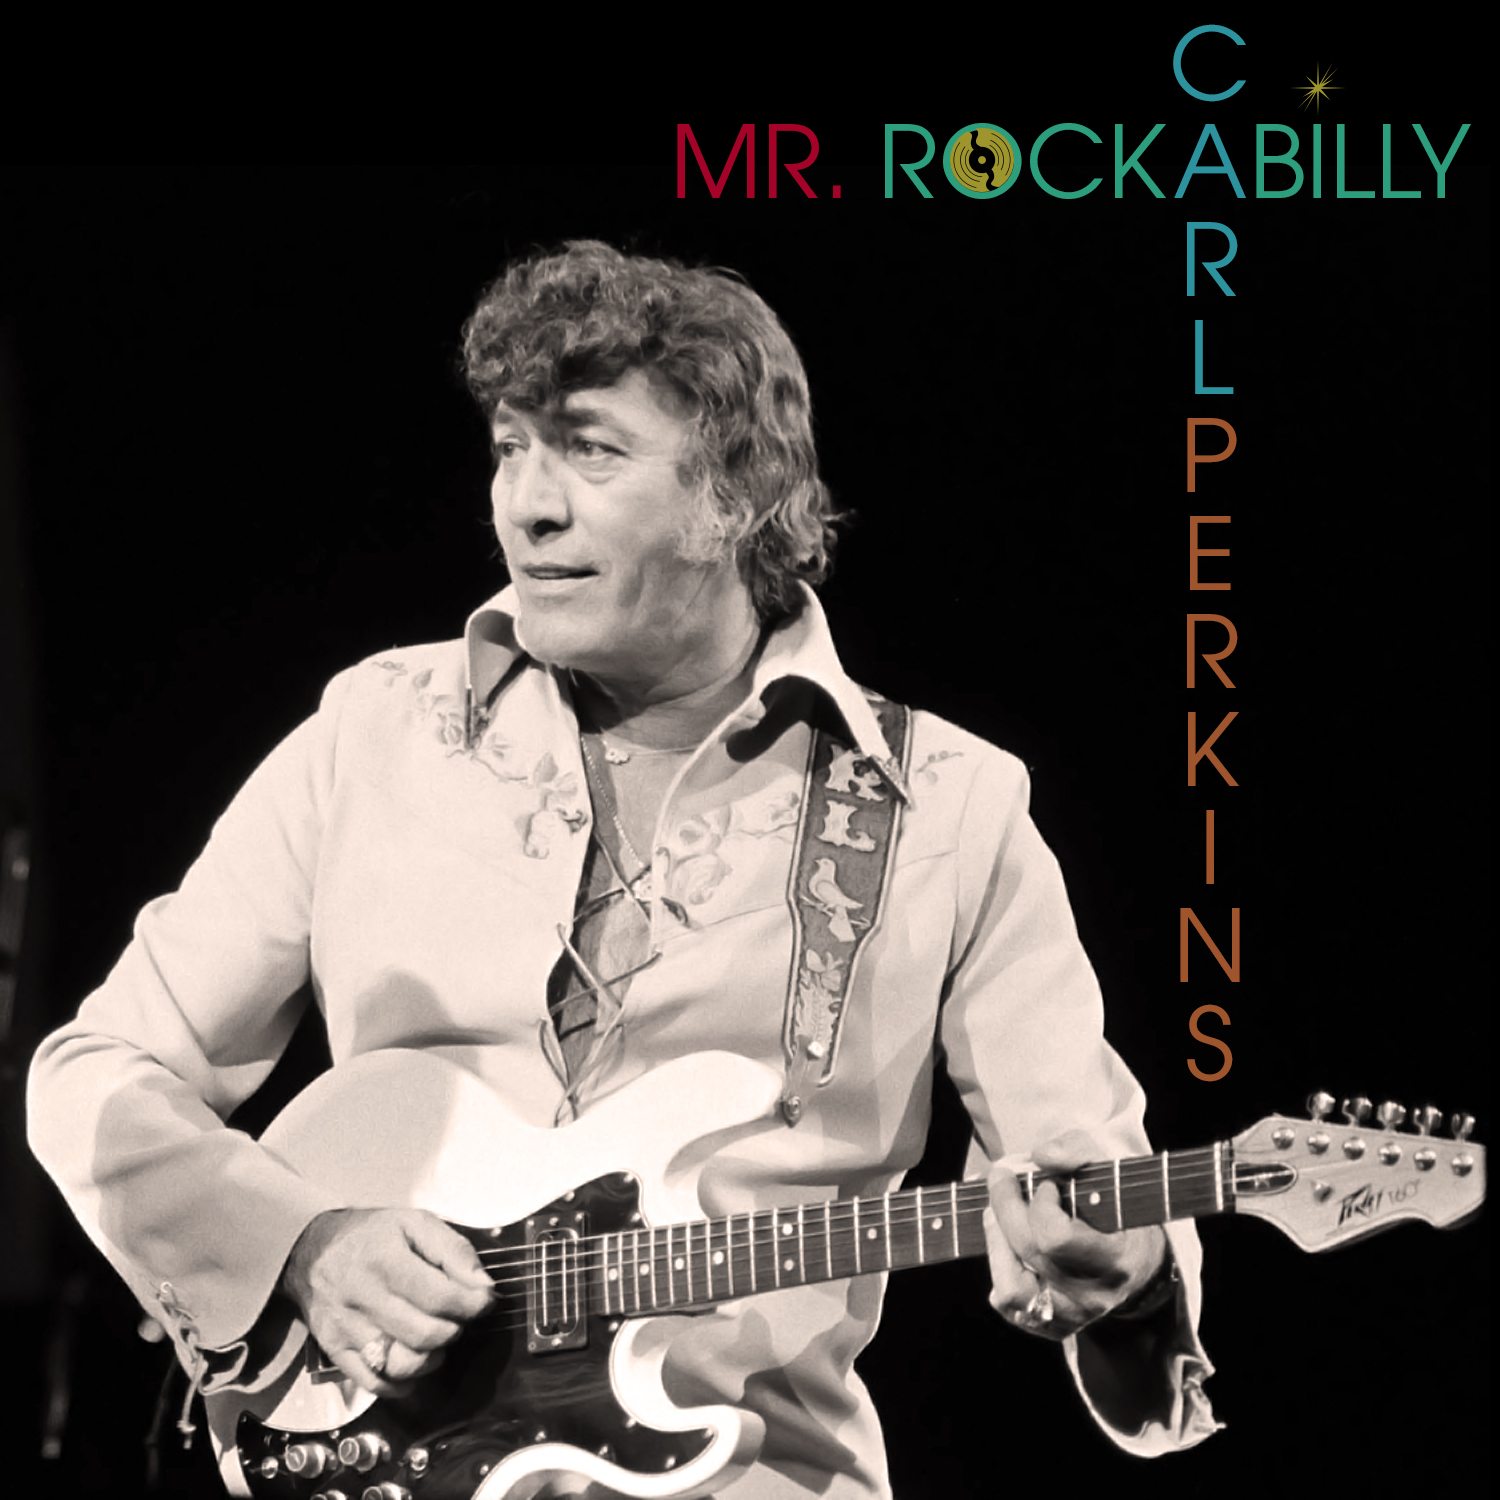 Mr. Rockabilly by Carl Perkins